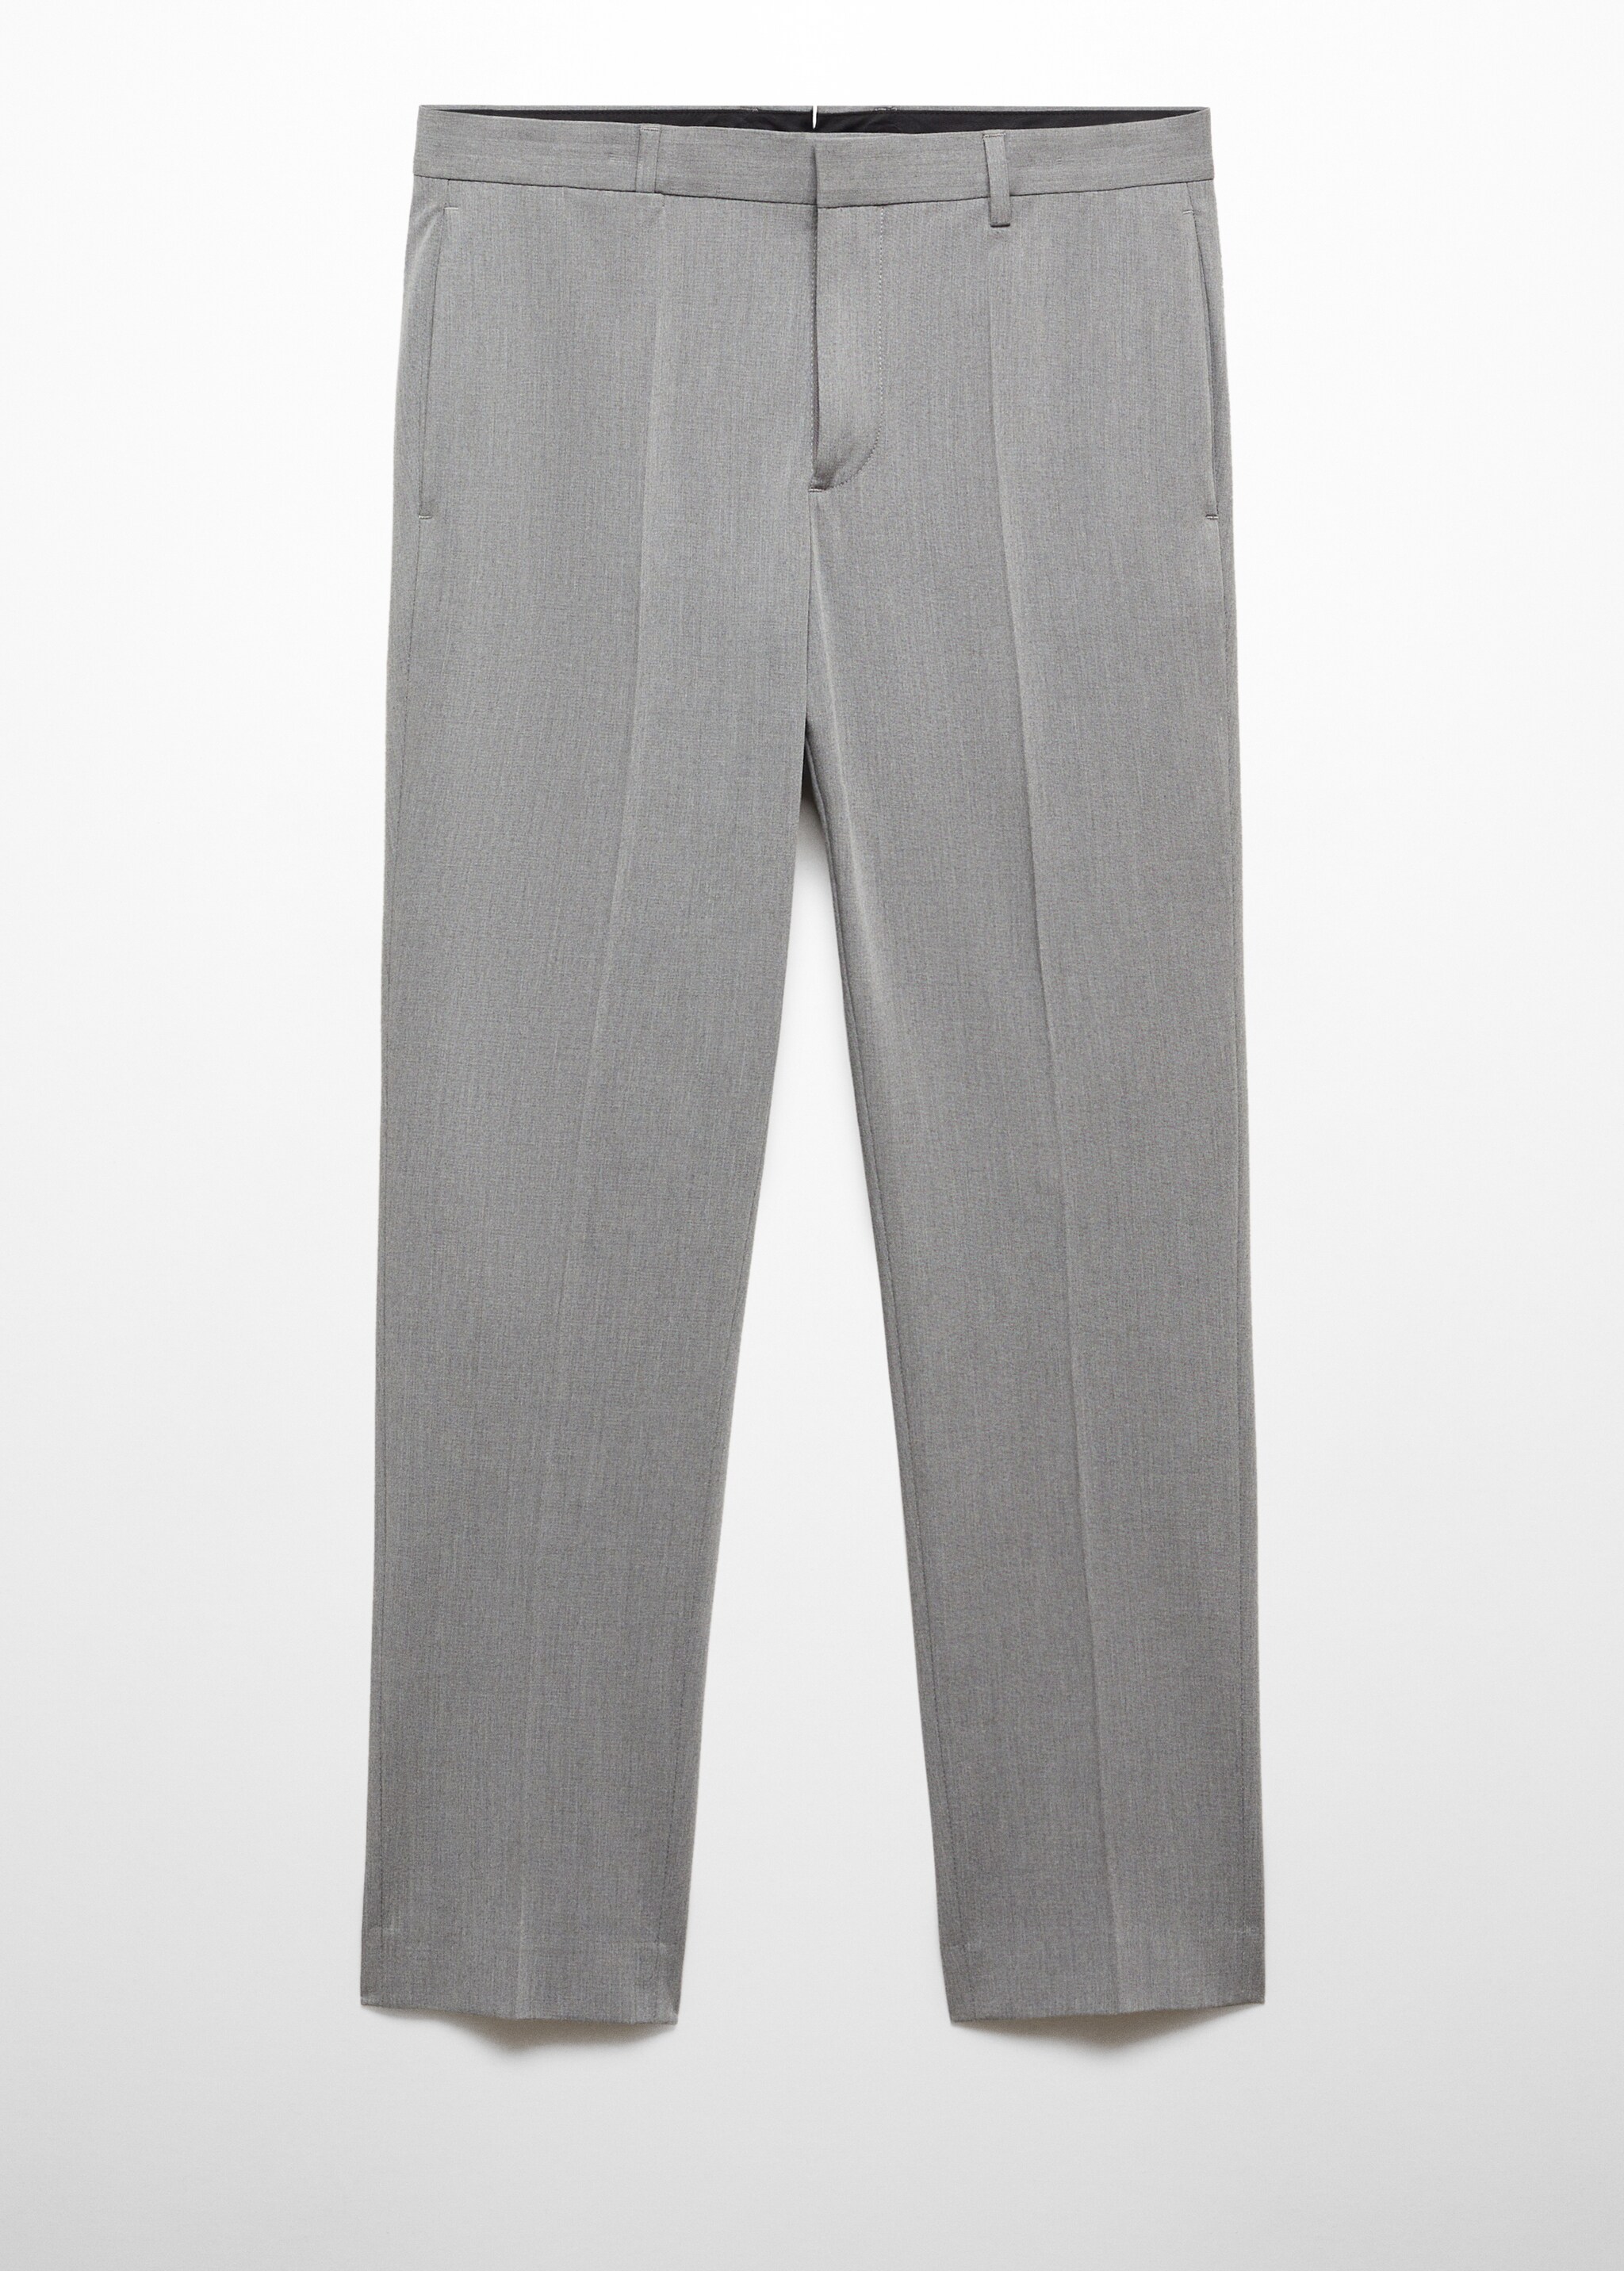 Костюмные брюки super slim fit из ткани стретч - Изделие без модели